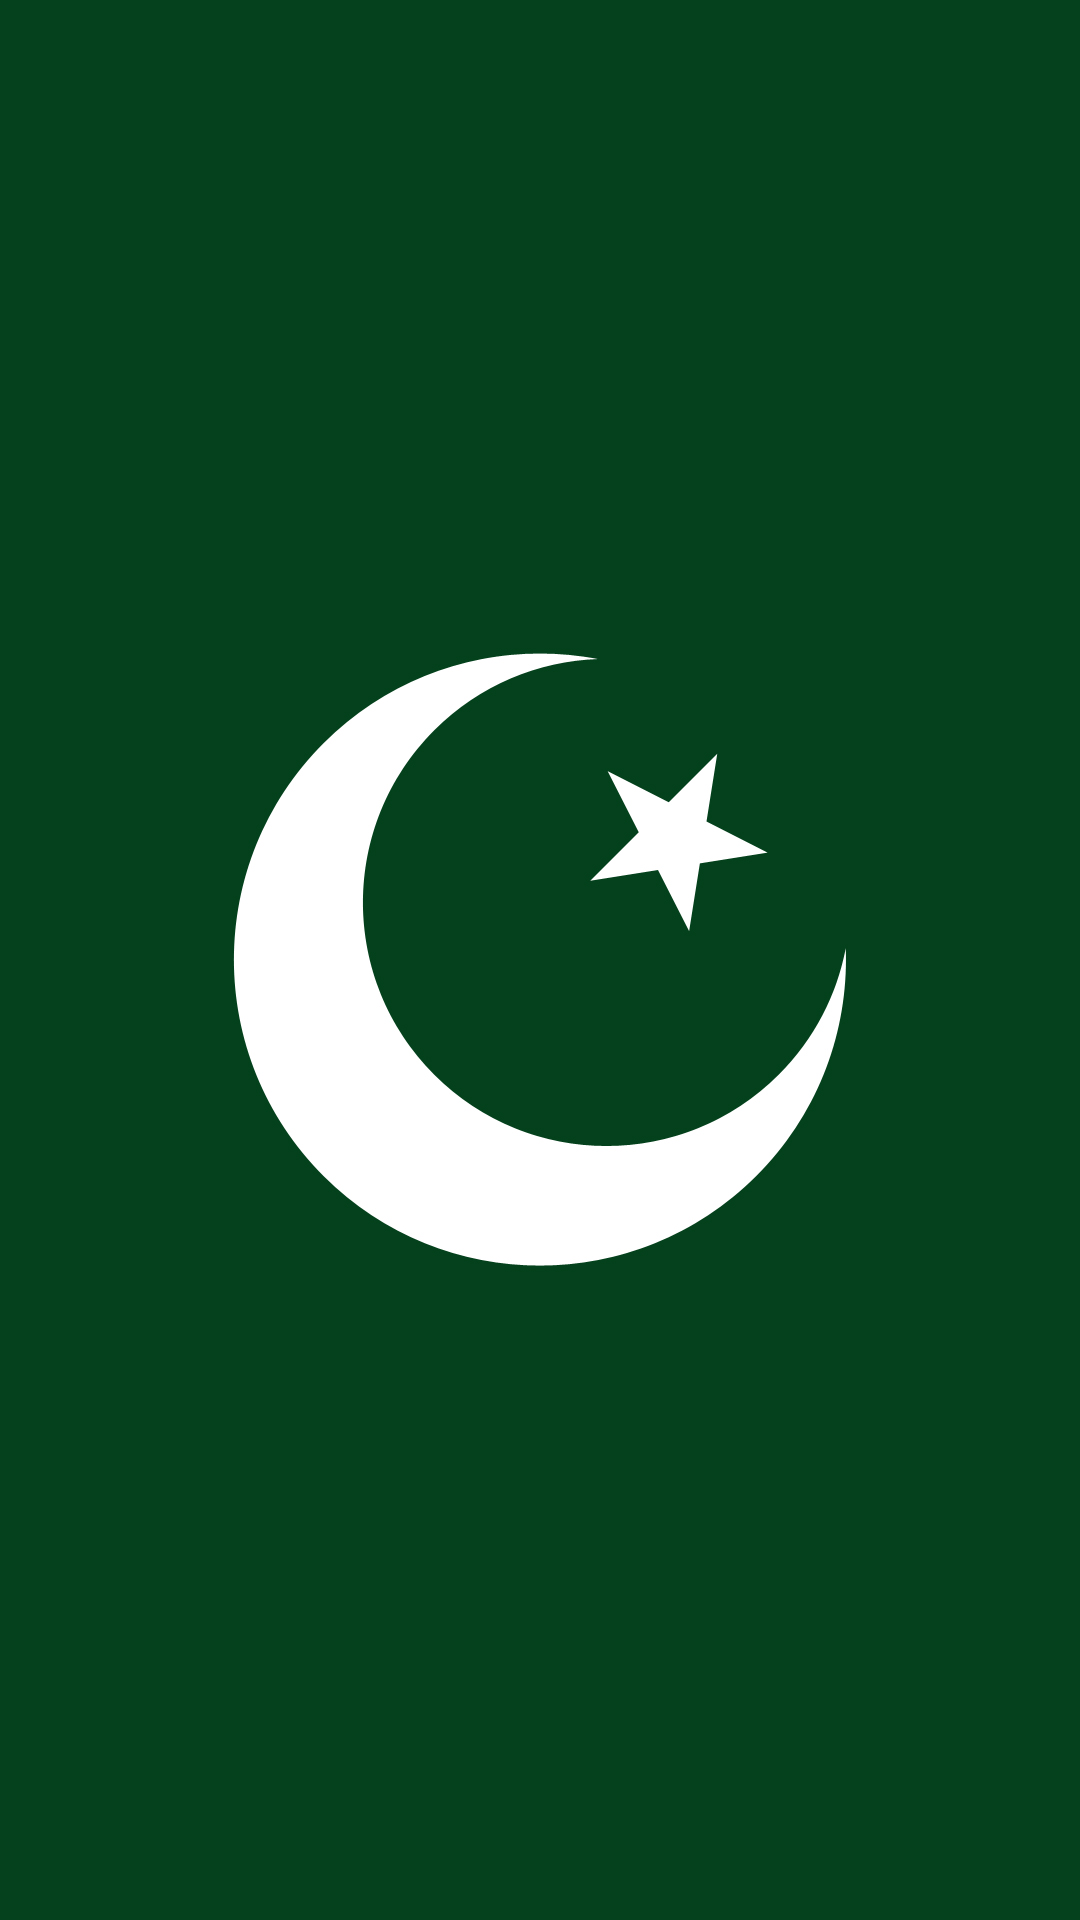 Pakistan Flag - Download Mobile Phone full HD wallpaper